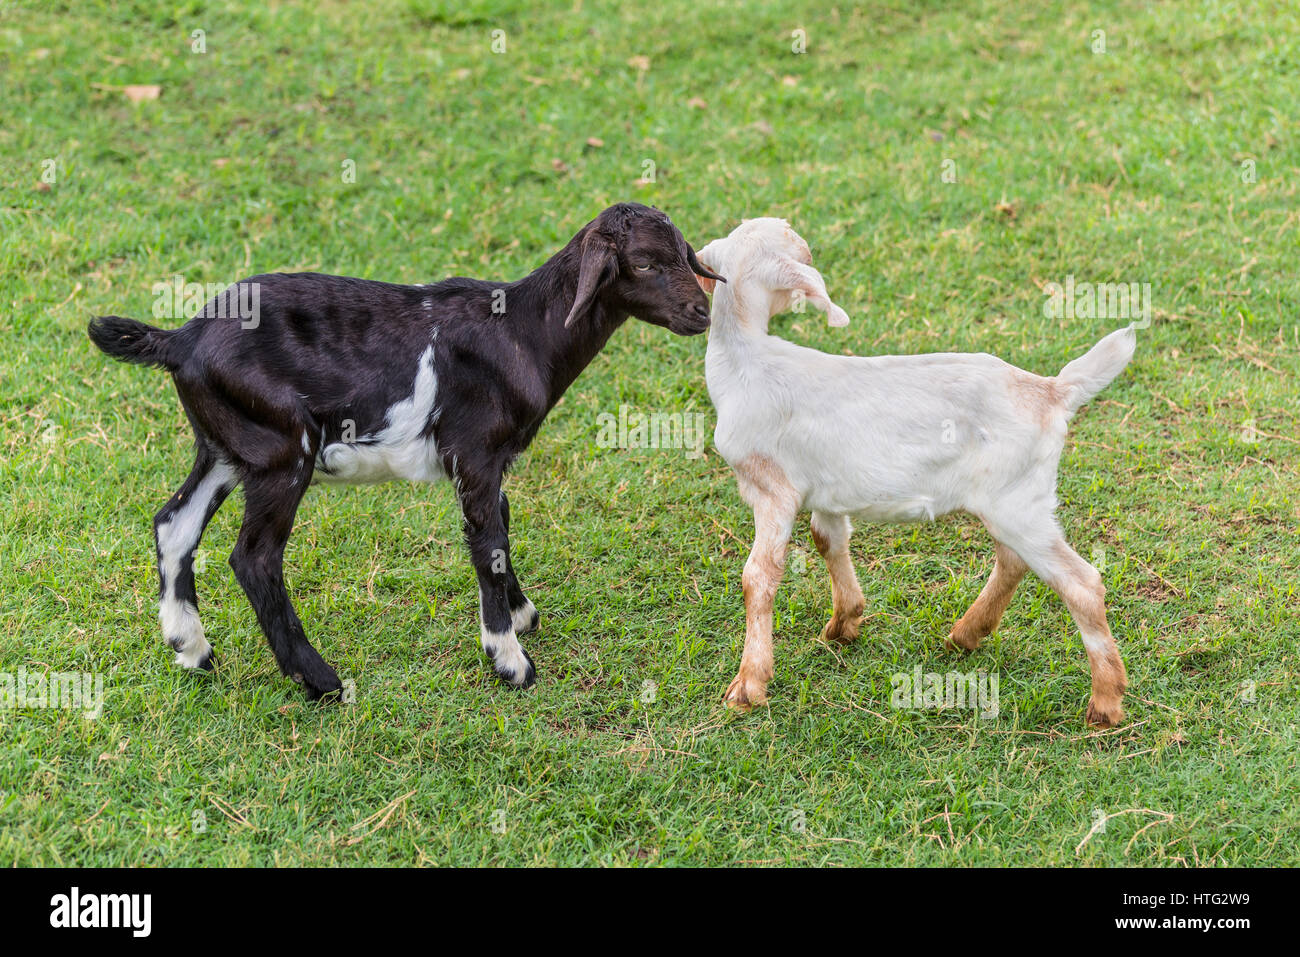 Zwei lustige junge schwarze und weiße Ziegen auf einem grünen Rasen Stockfoto